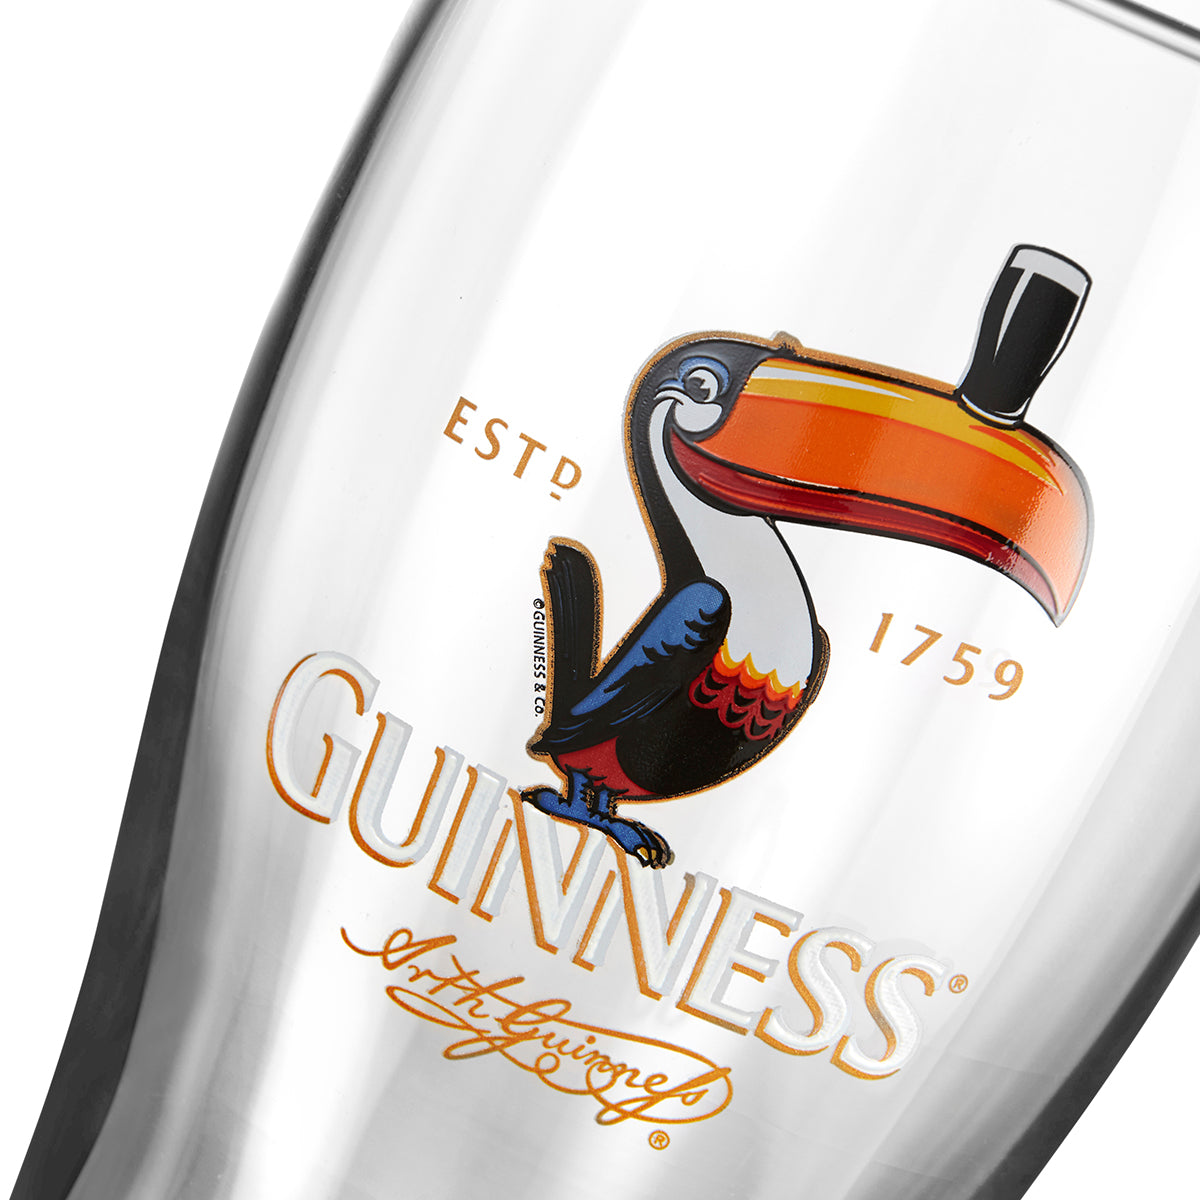 Guinness UK - Guinness Toucan Pint Glass - 2 Pack.